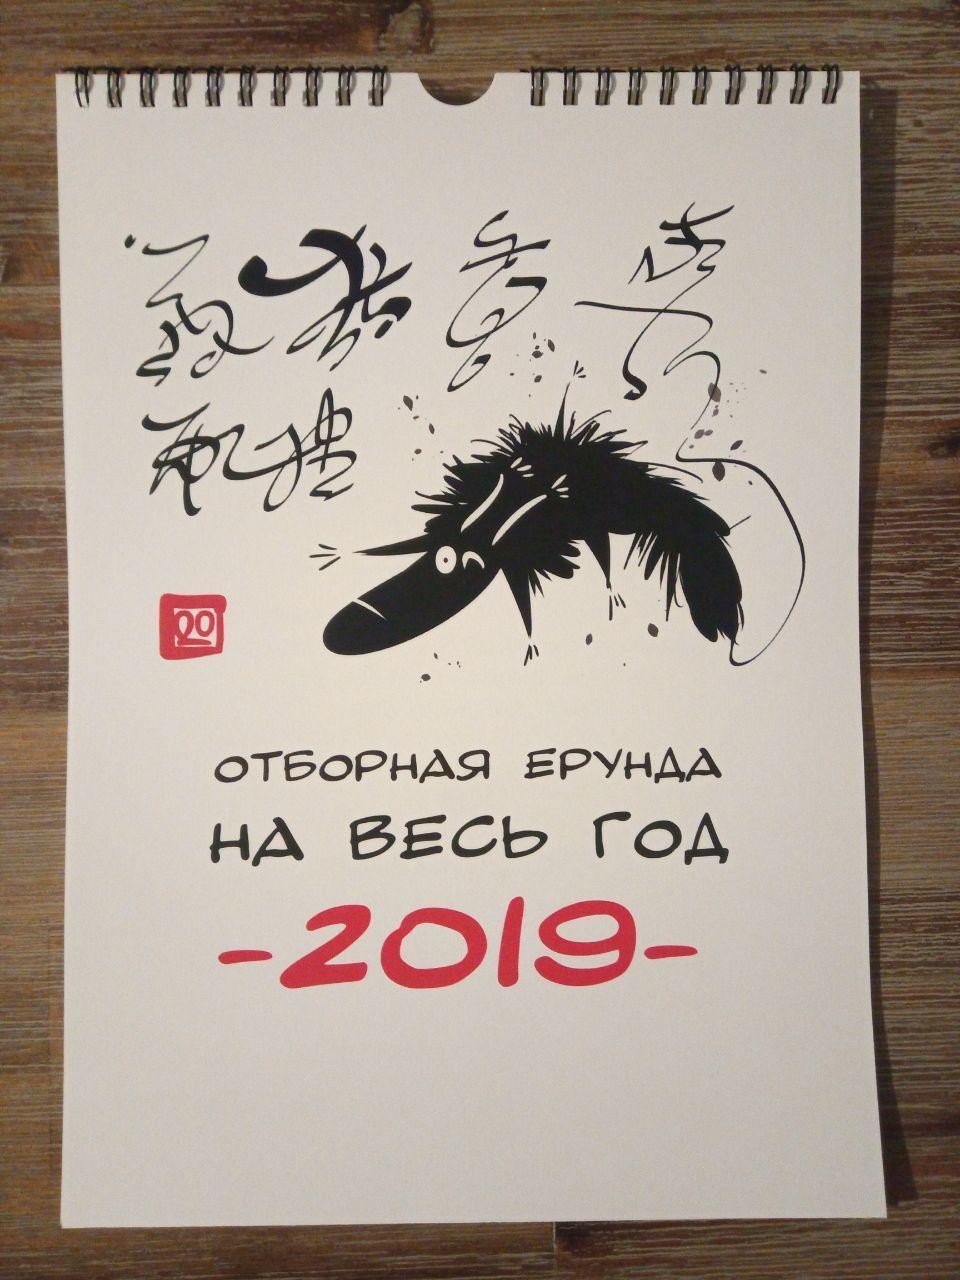 Календарь "Отборная ерунда на весь год!" (1 апреля 2019 - 31 марта 2020)